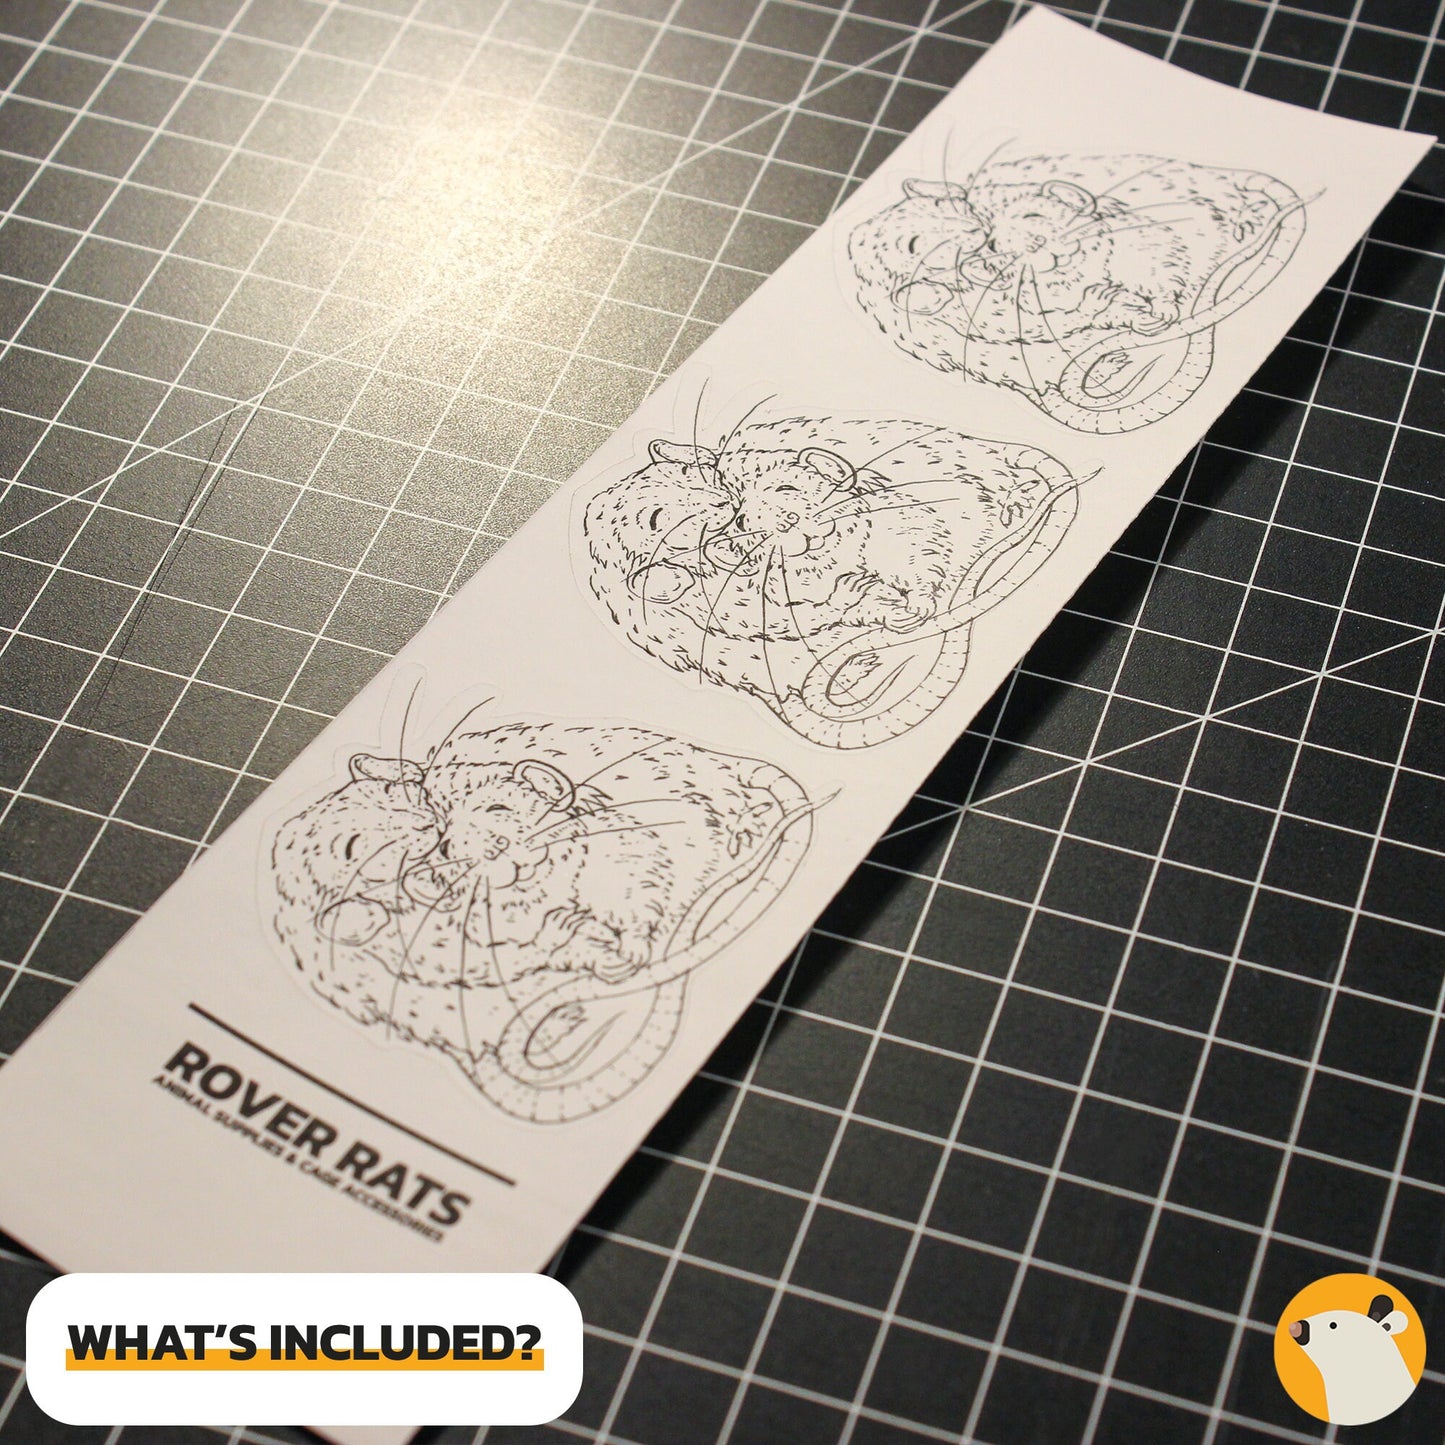 Zwei Umarmende Rattenfreunde | 3x Handgezeichneter Ratten Aufkleber In Matter Tinte